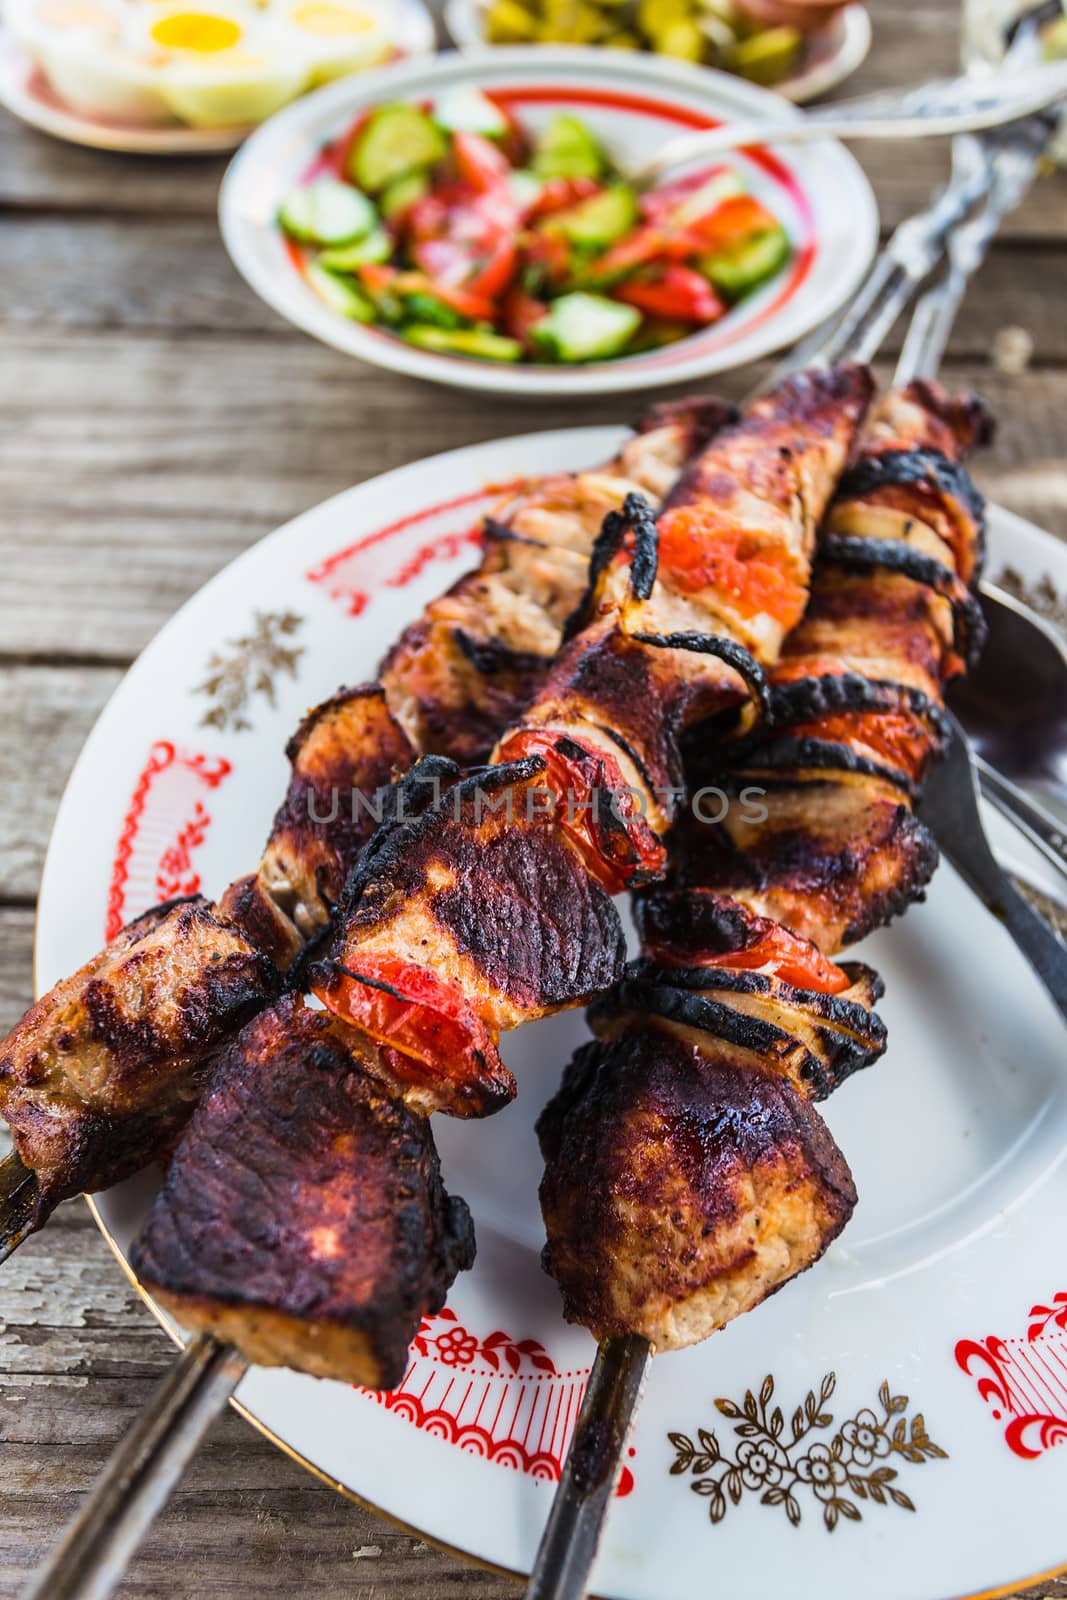 Shish kebabs on skewers on a plate